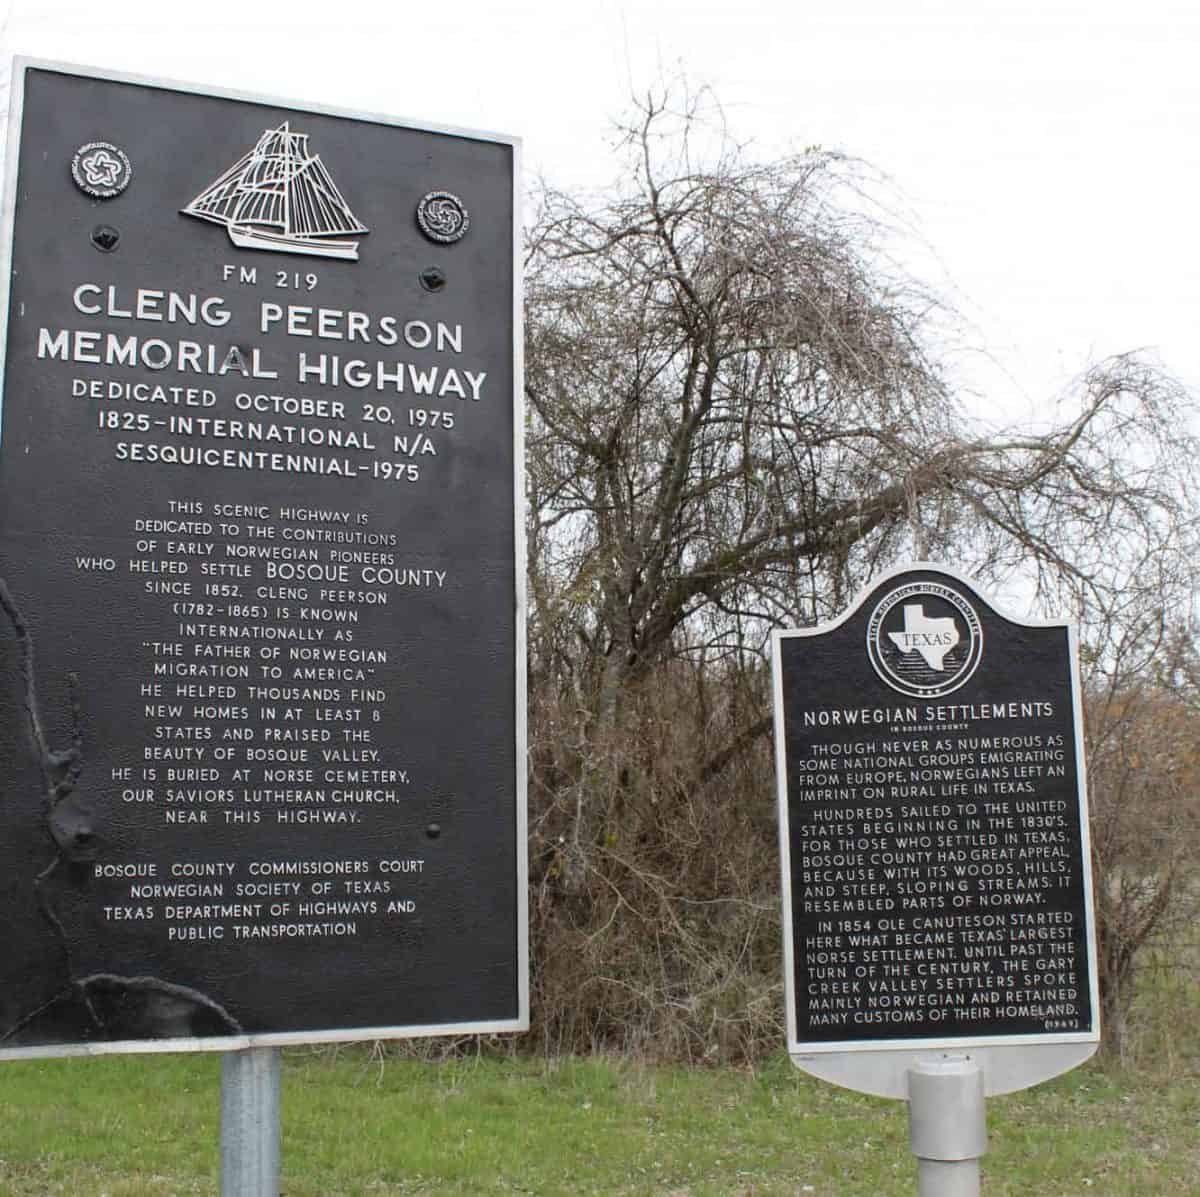 Veien FM 219 i Texas gjennom Norse-distriktet i Bosque County er tilegnet Cleng Peerson og de tidlige norske nybyggerne i Texas.